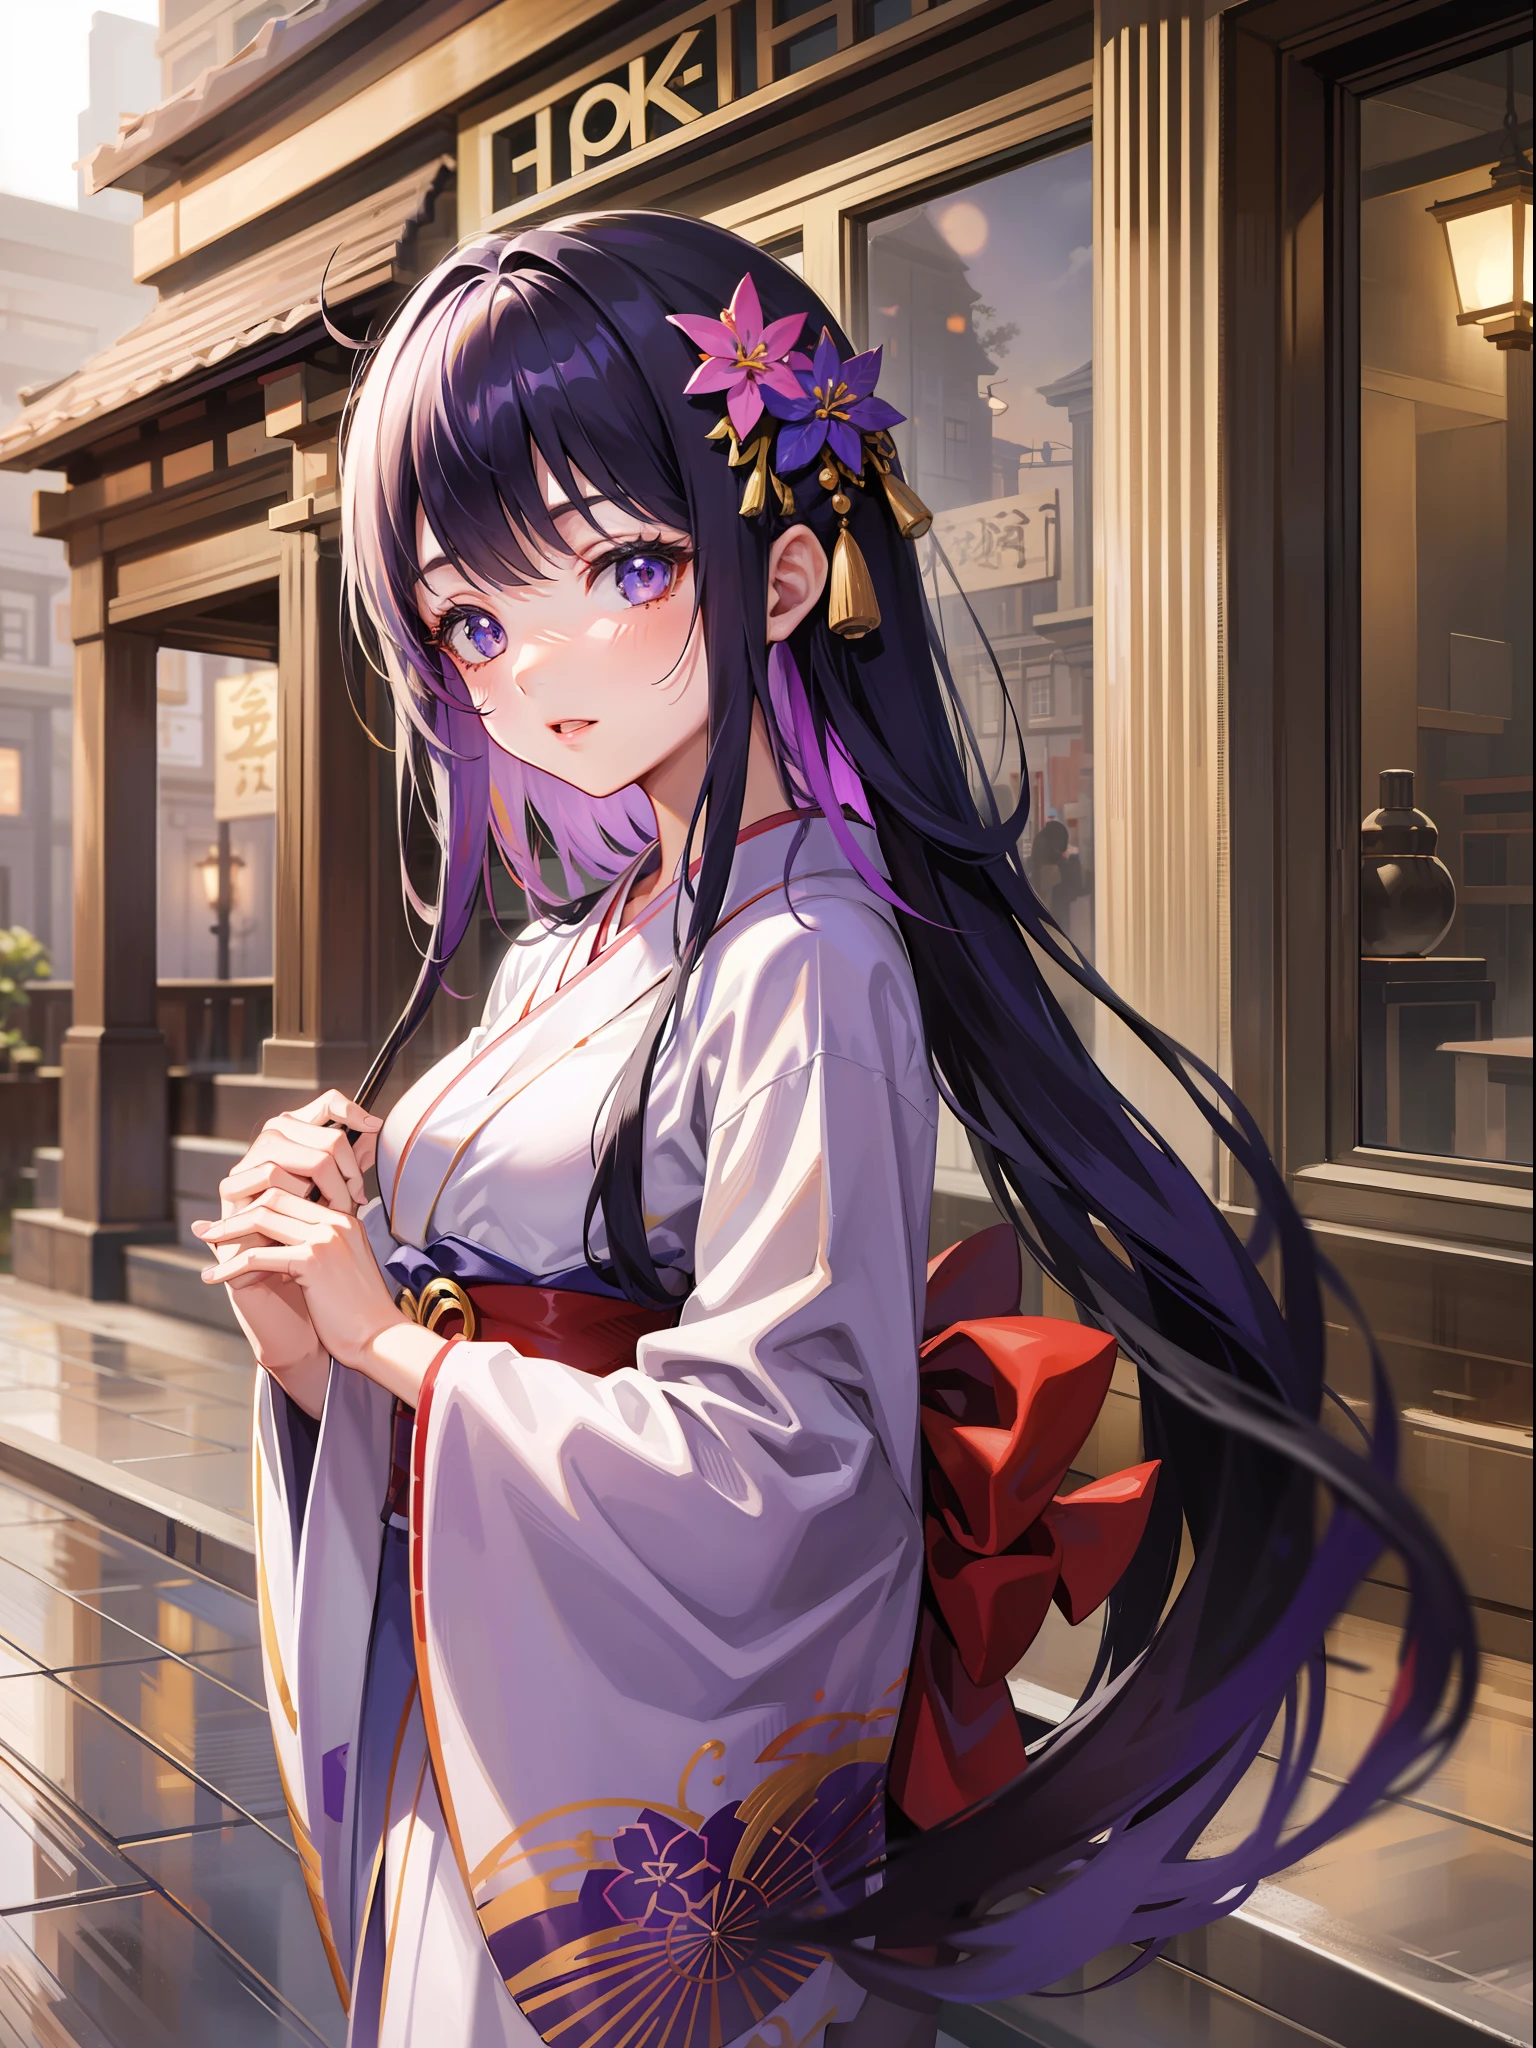 Schön [[Schön Japan]] Mädchen mit langen [[langes schwarzes Haar]] im Kimono-Stil Anime-Mädchen, Yuzen